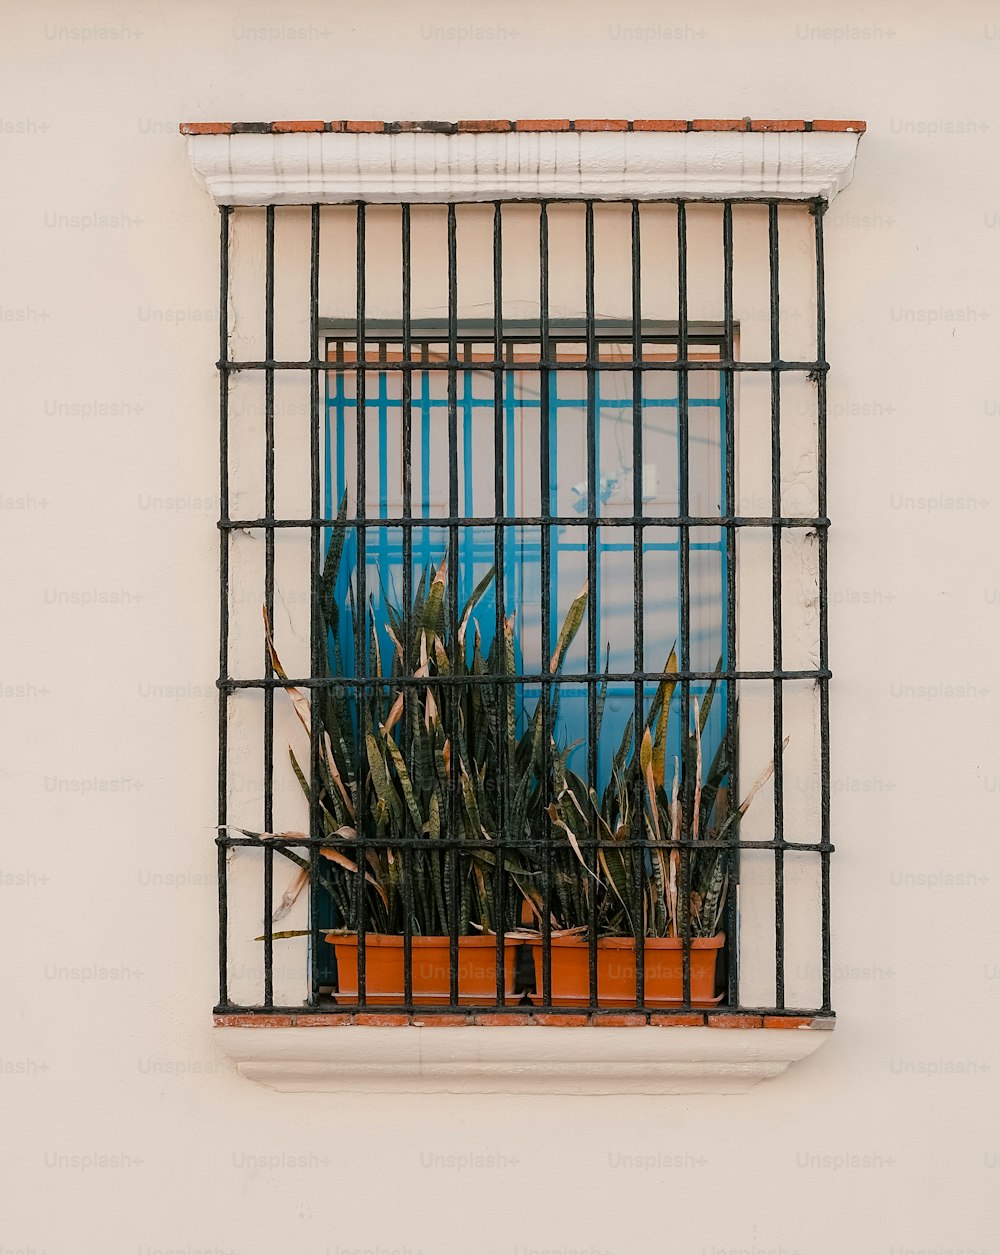 une fenêtre avec des barres et une plante en pot